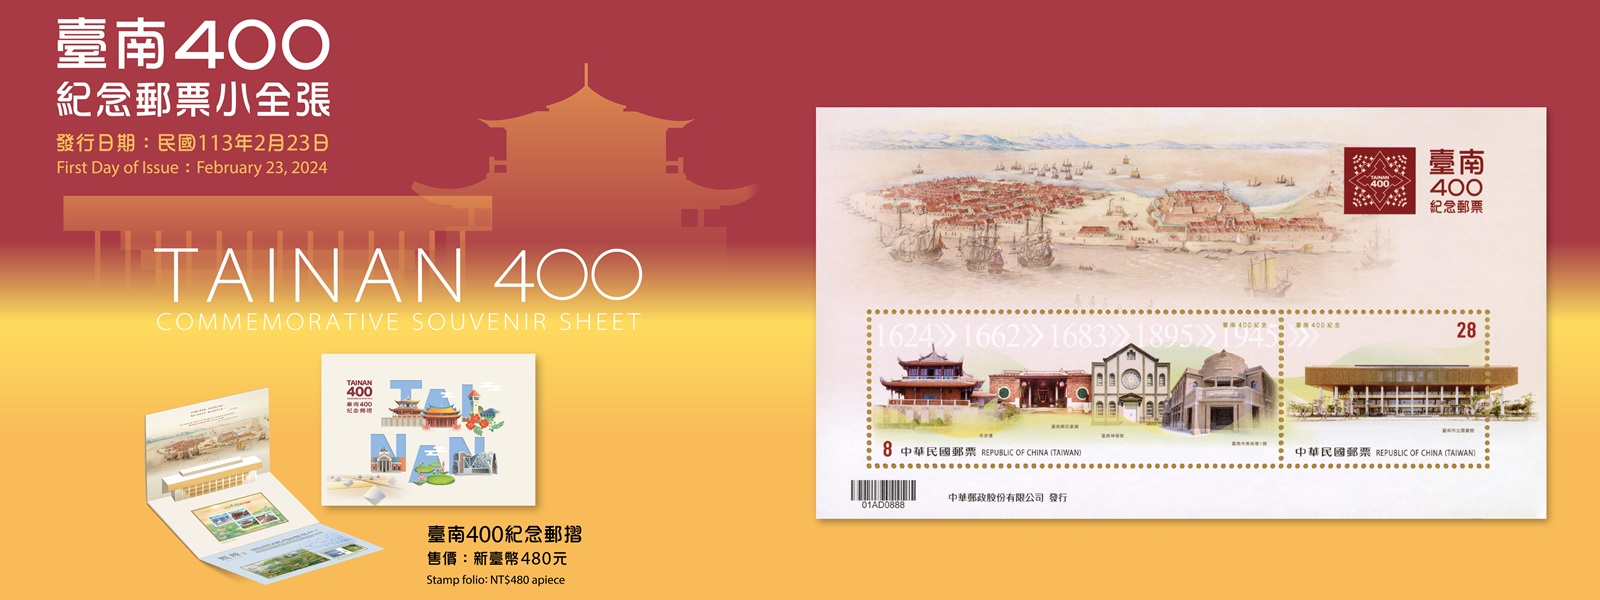 臺南是臺灣最早開發建立的城市，1624年荷蘭東印度公司於臺南興築熱蘭遮城作為據點，自此開啟與世界連結的契機。臺南一直是臺灣政治、經濟及文化重心，被視為臺灣歷史最悠久的文化重鎮，2024年適逢臺南400，本公司特發行小全張1張，內含郵票2枚，面值為8元、28元郵票各1枚。